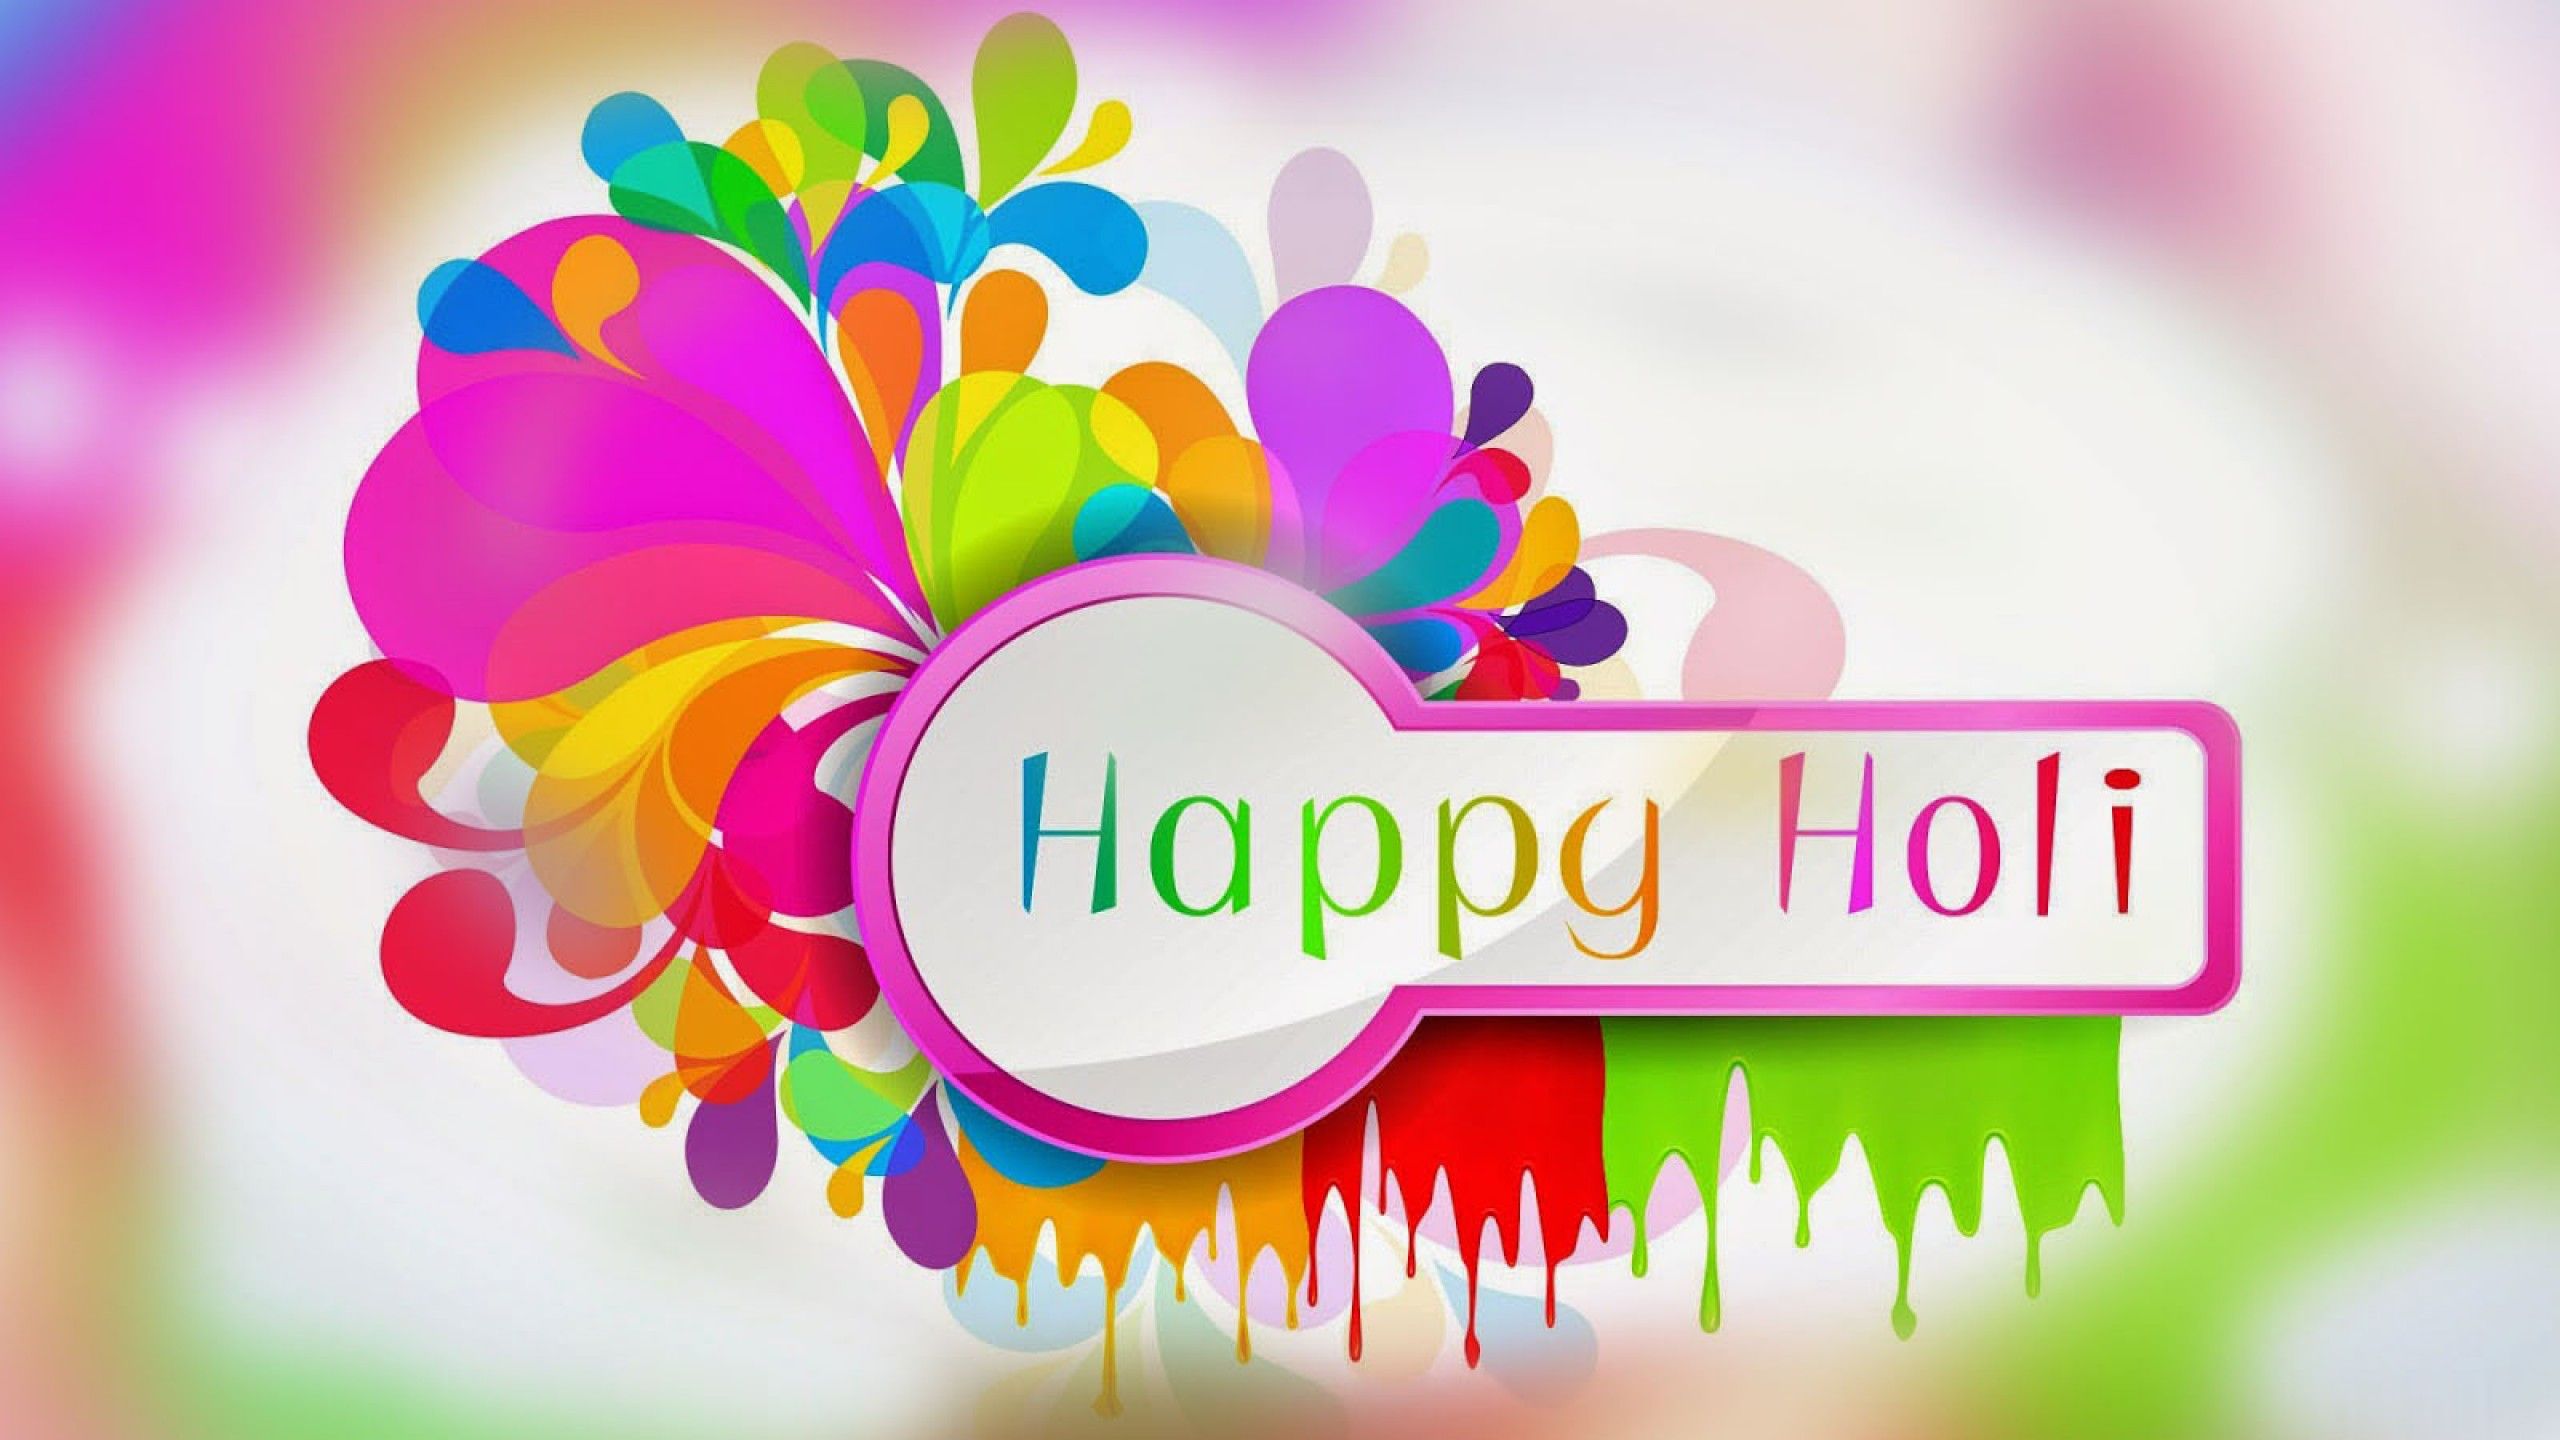 Happy Holi 2018 multi color holi festival wallpaper HD photo